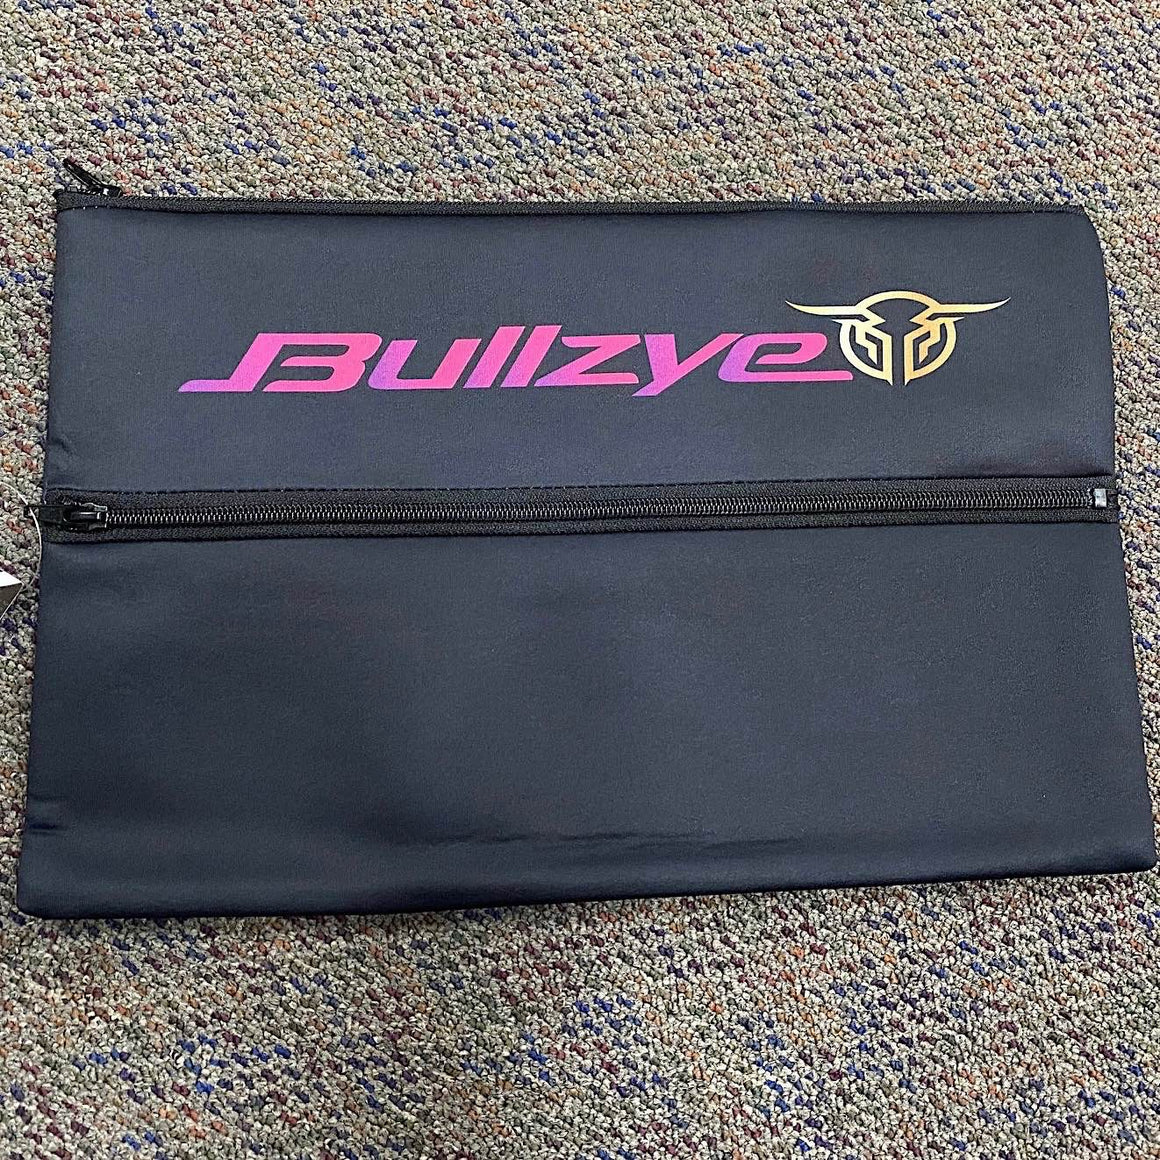 Bullzye Sunset Pencil Case-Black